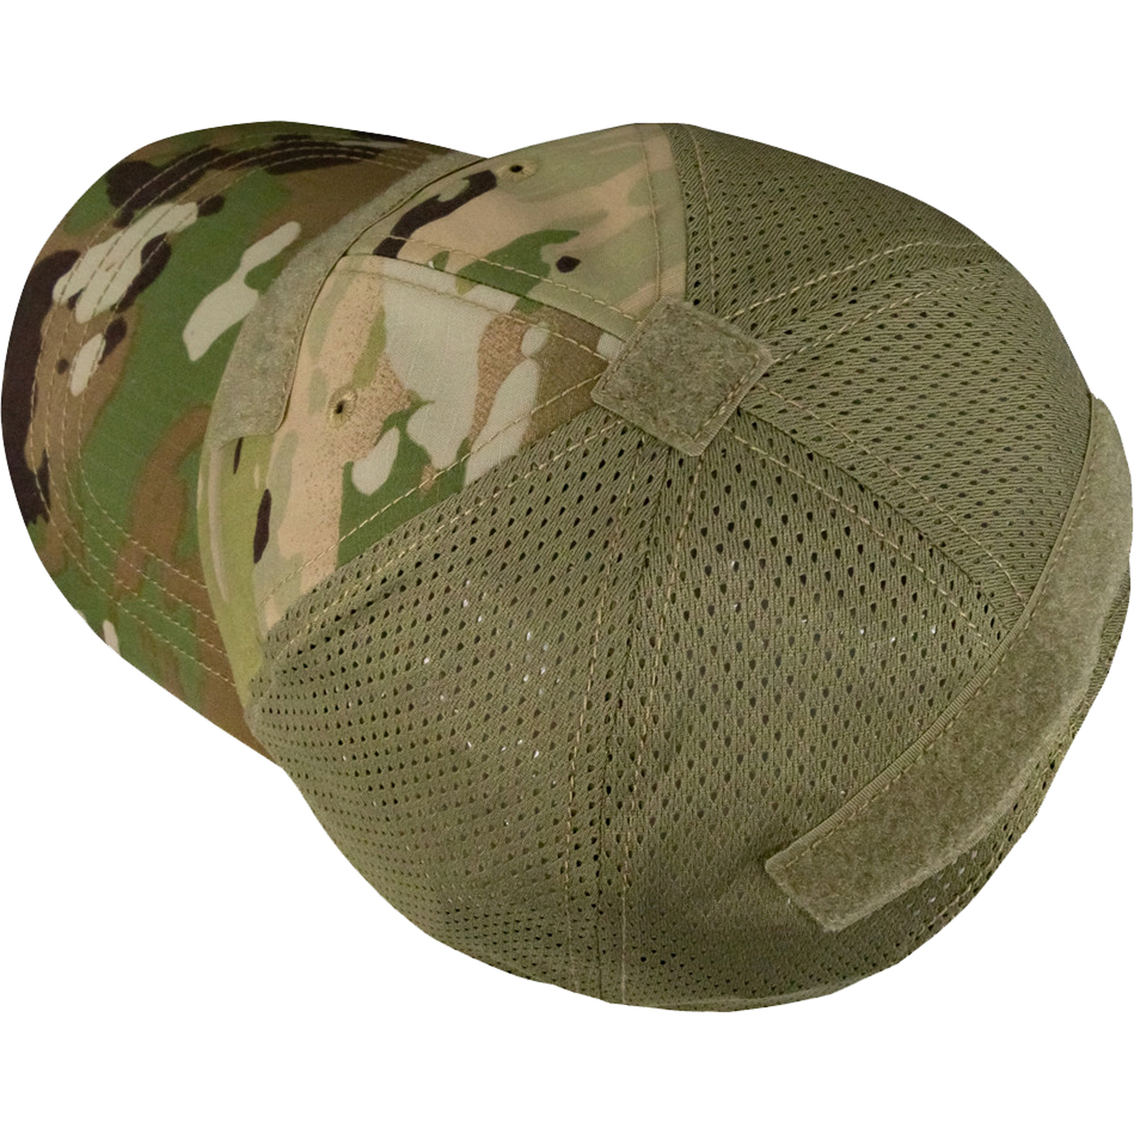 Condor Mesh Back Tactical Cap, Olive Green - Image 3 of 3